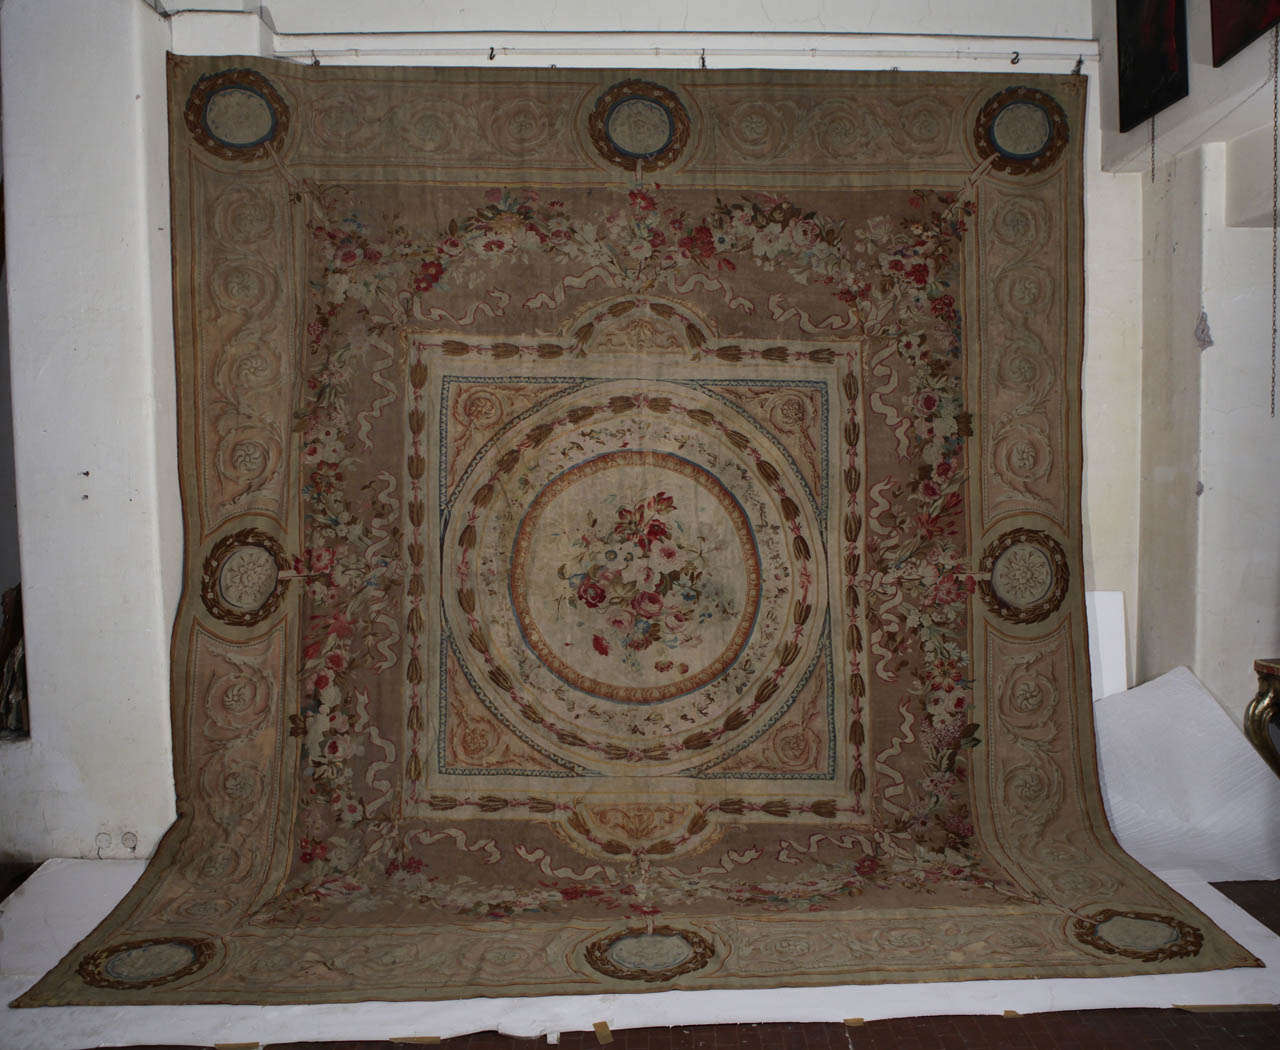 Ein sehr schöner französischer Aubusson-Teppich aus dem 19. Jahrhundert.
Maße: cm 530 x 480.